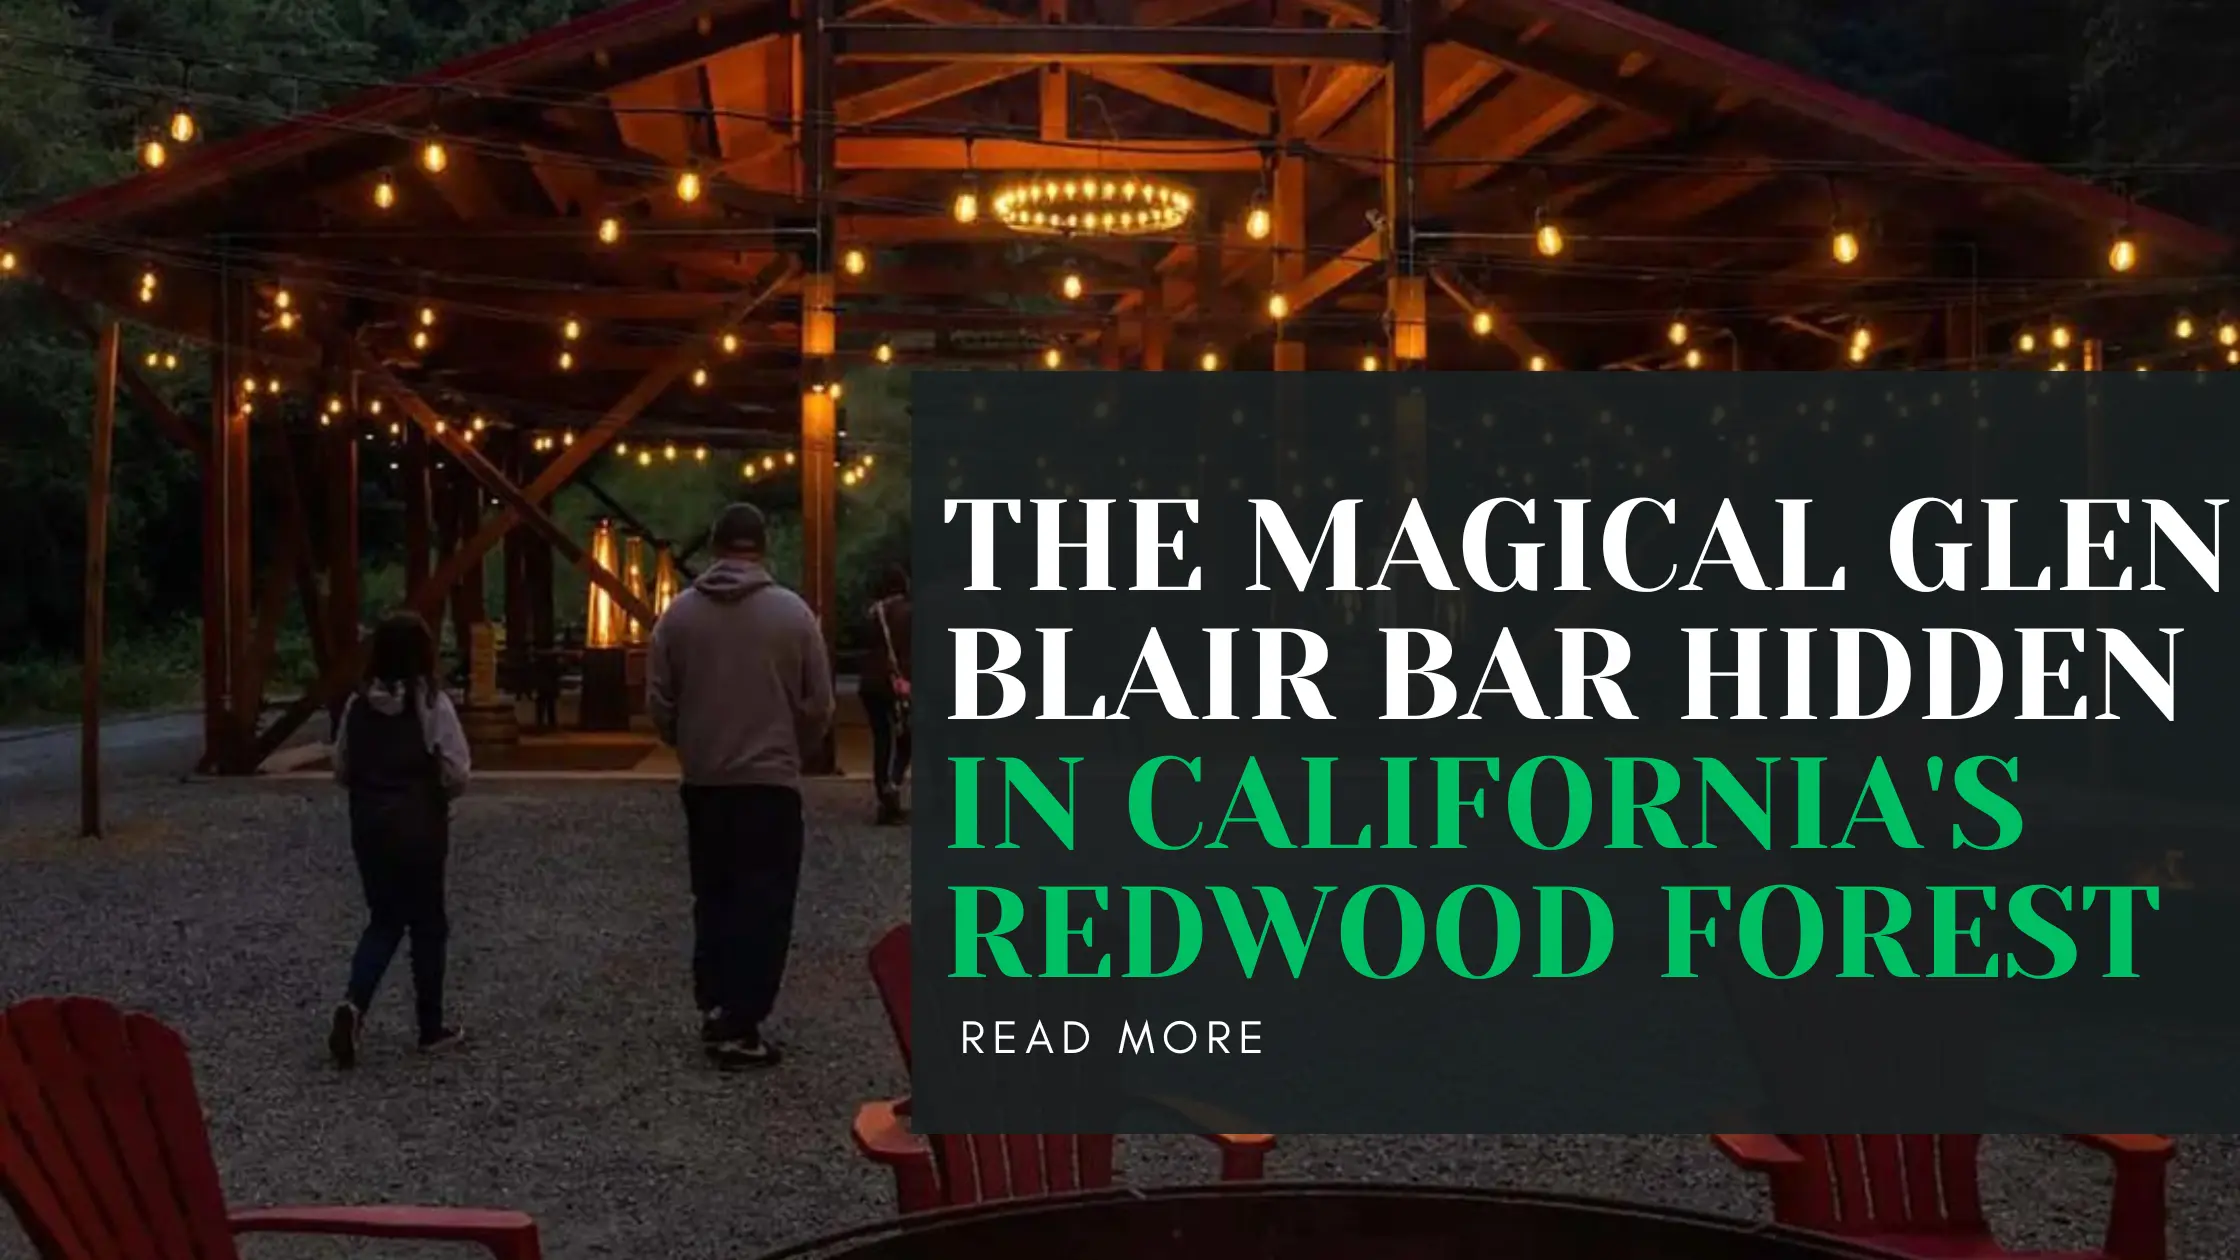 The Magical Glen Blair Bar Hidden in California's Redwood Forest